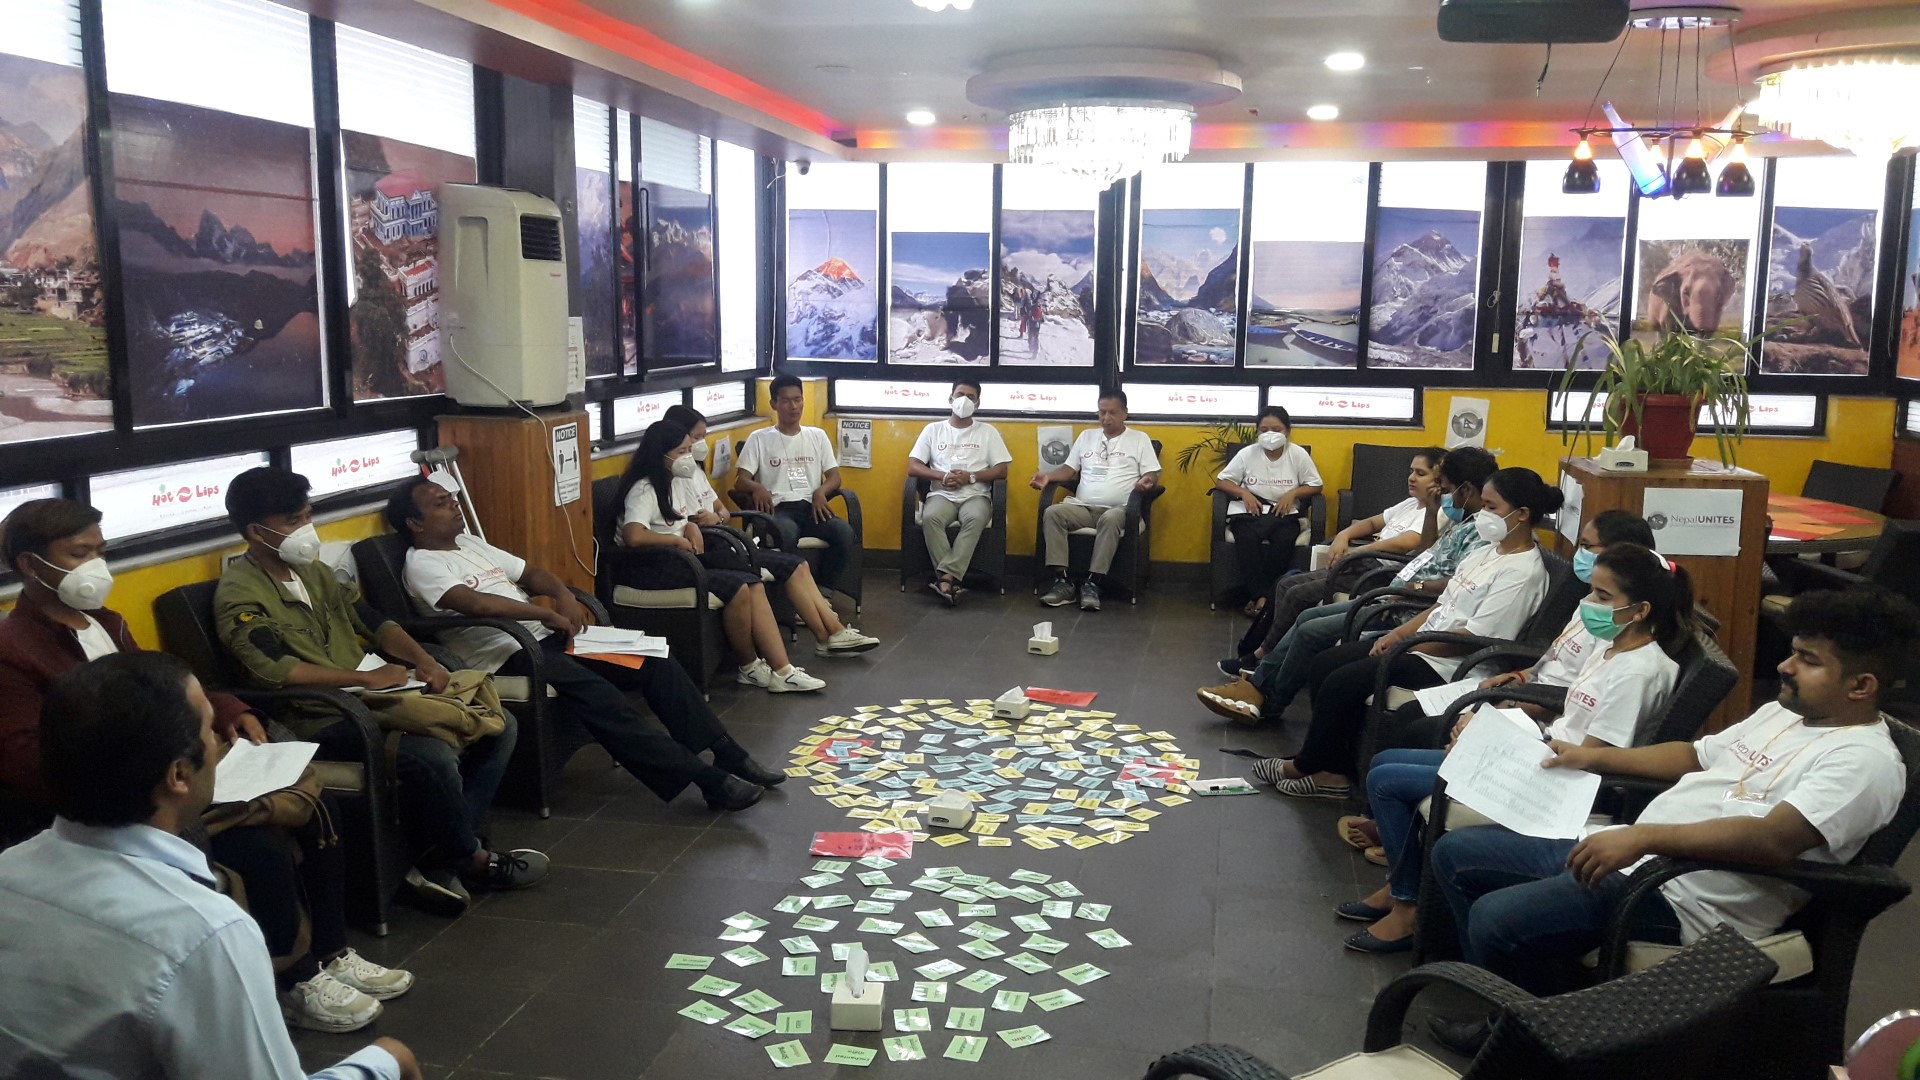 Gender and Nonviolent Communication (NVC) Workshop